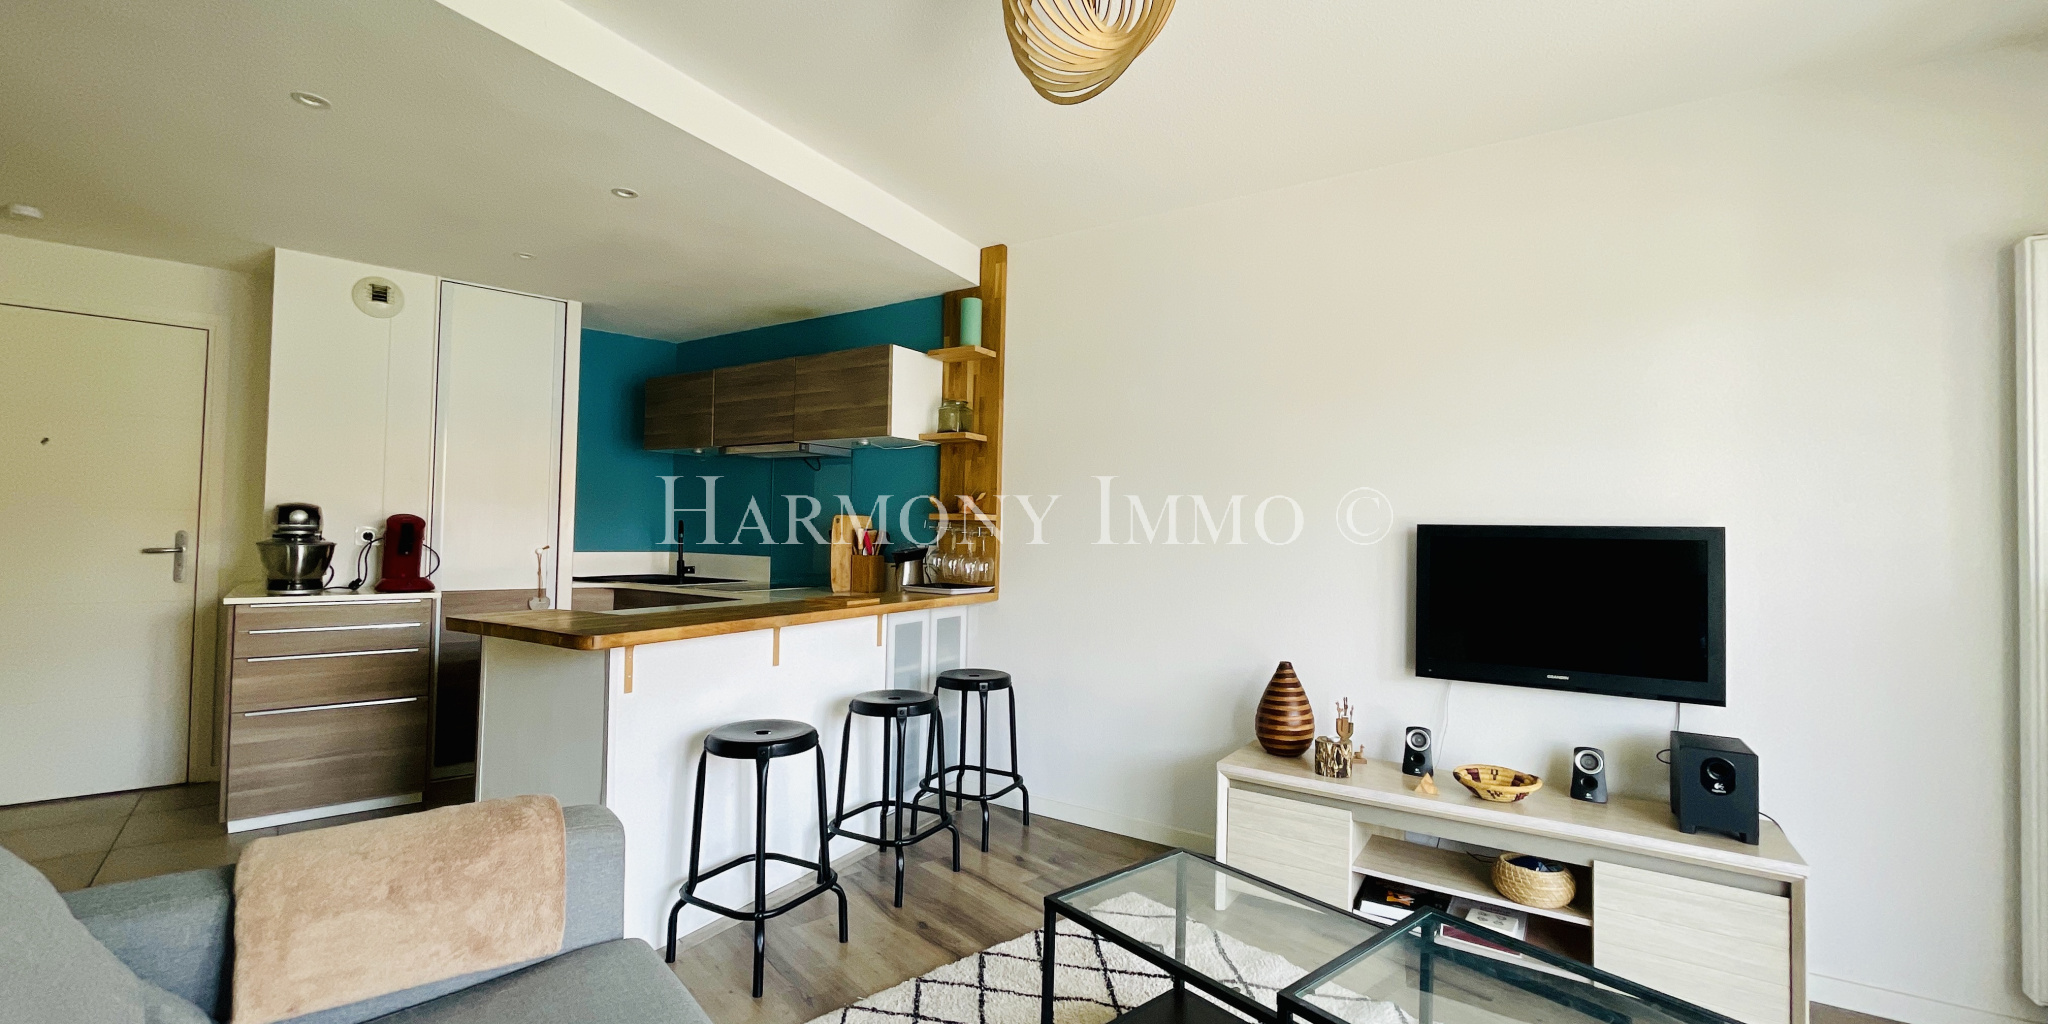 Vente Appartement 35m² 2 Pièces à Saint-Pierre-d'Irube (64990) - Harmony Immo